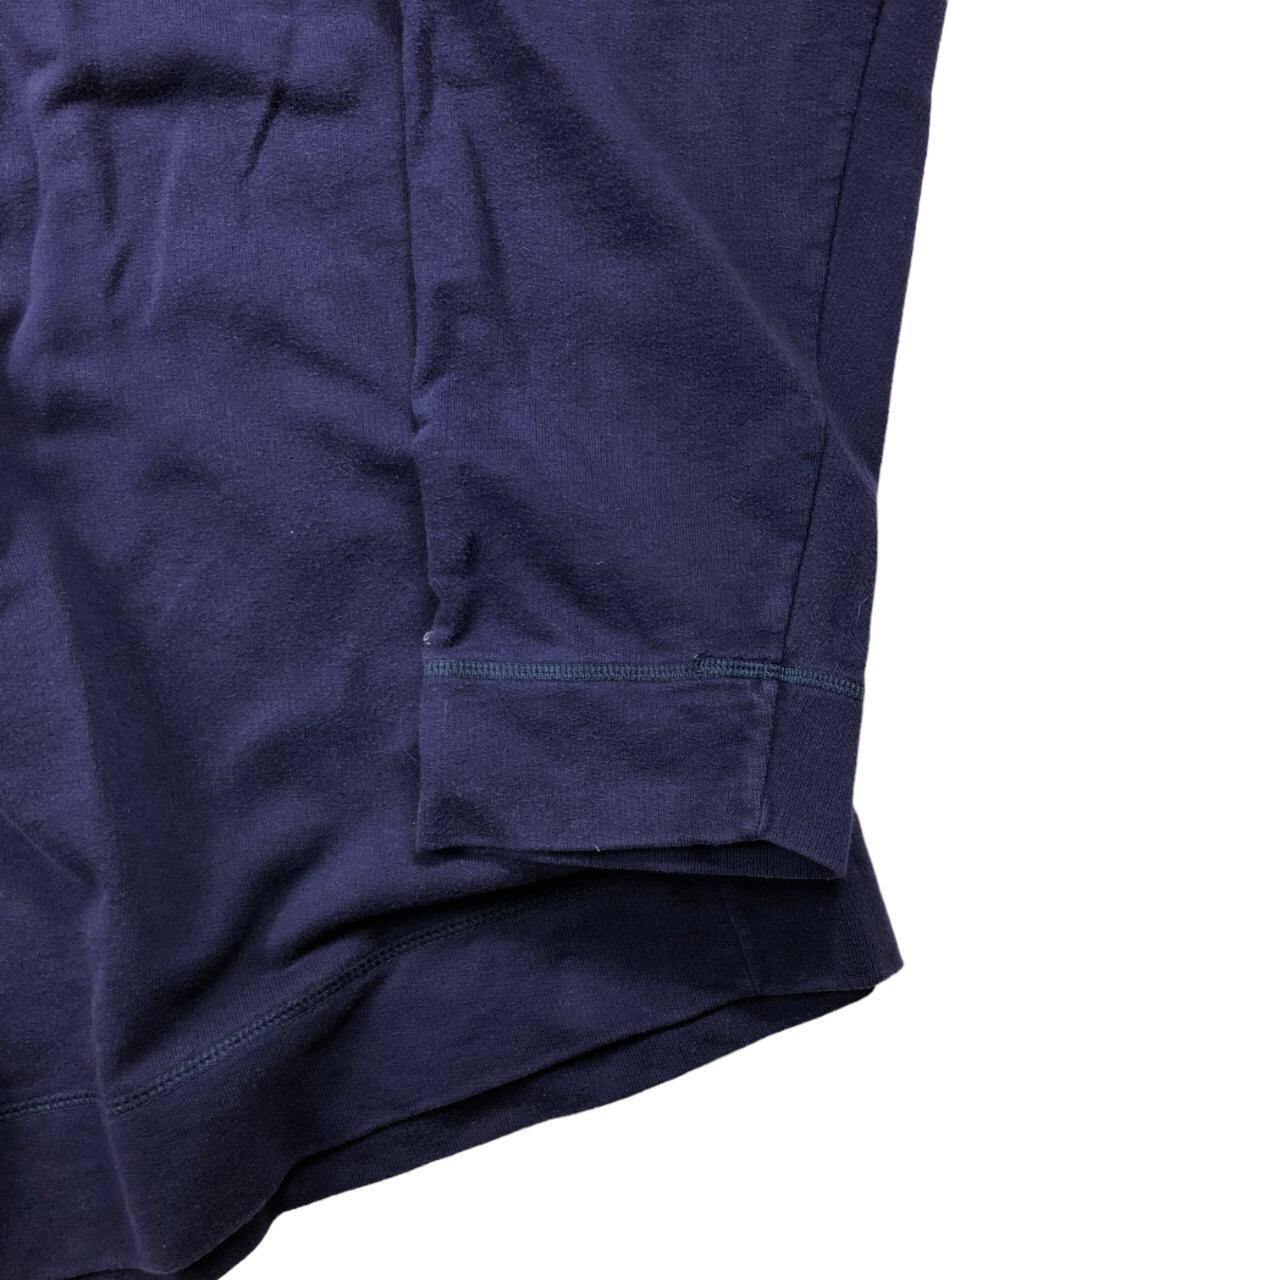 Lacoste sweatshirt 73 cm length x 61 cm p2p #vintage - Depop